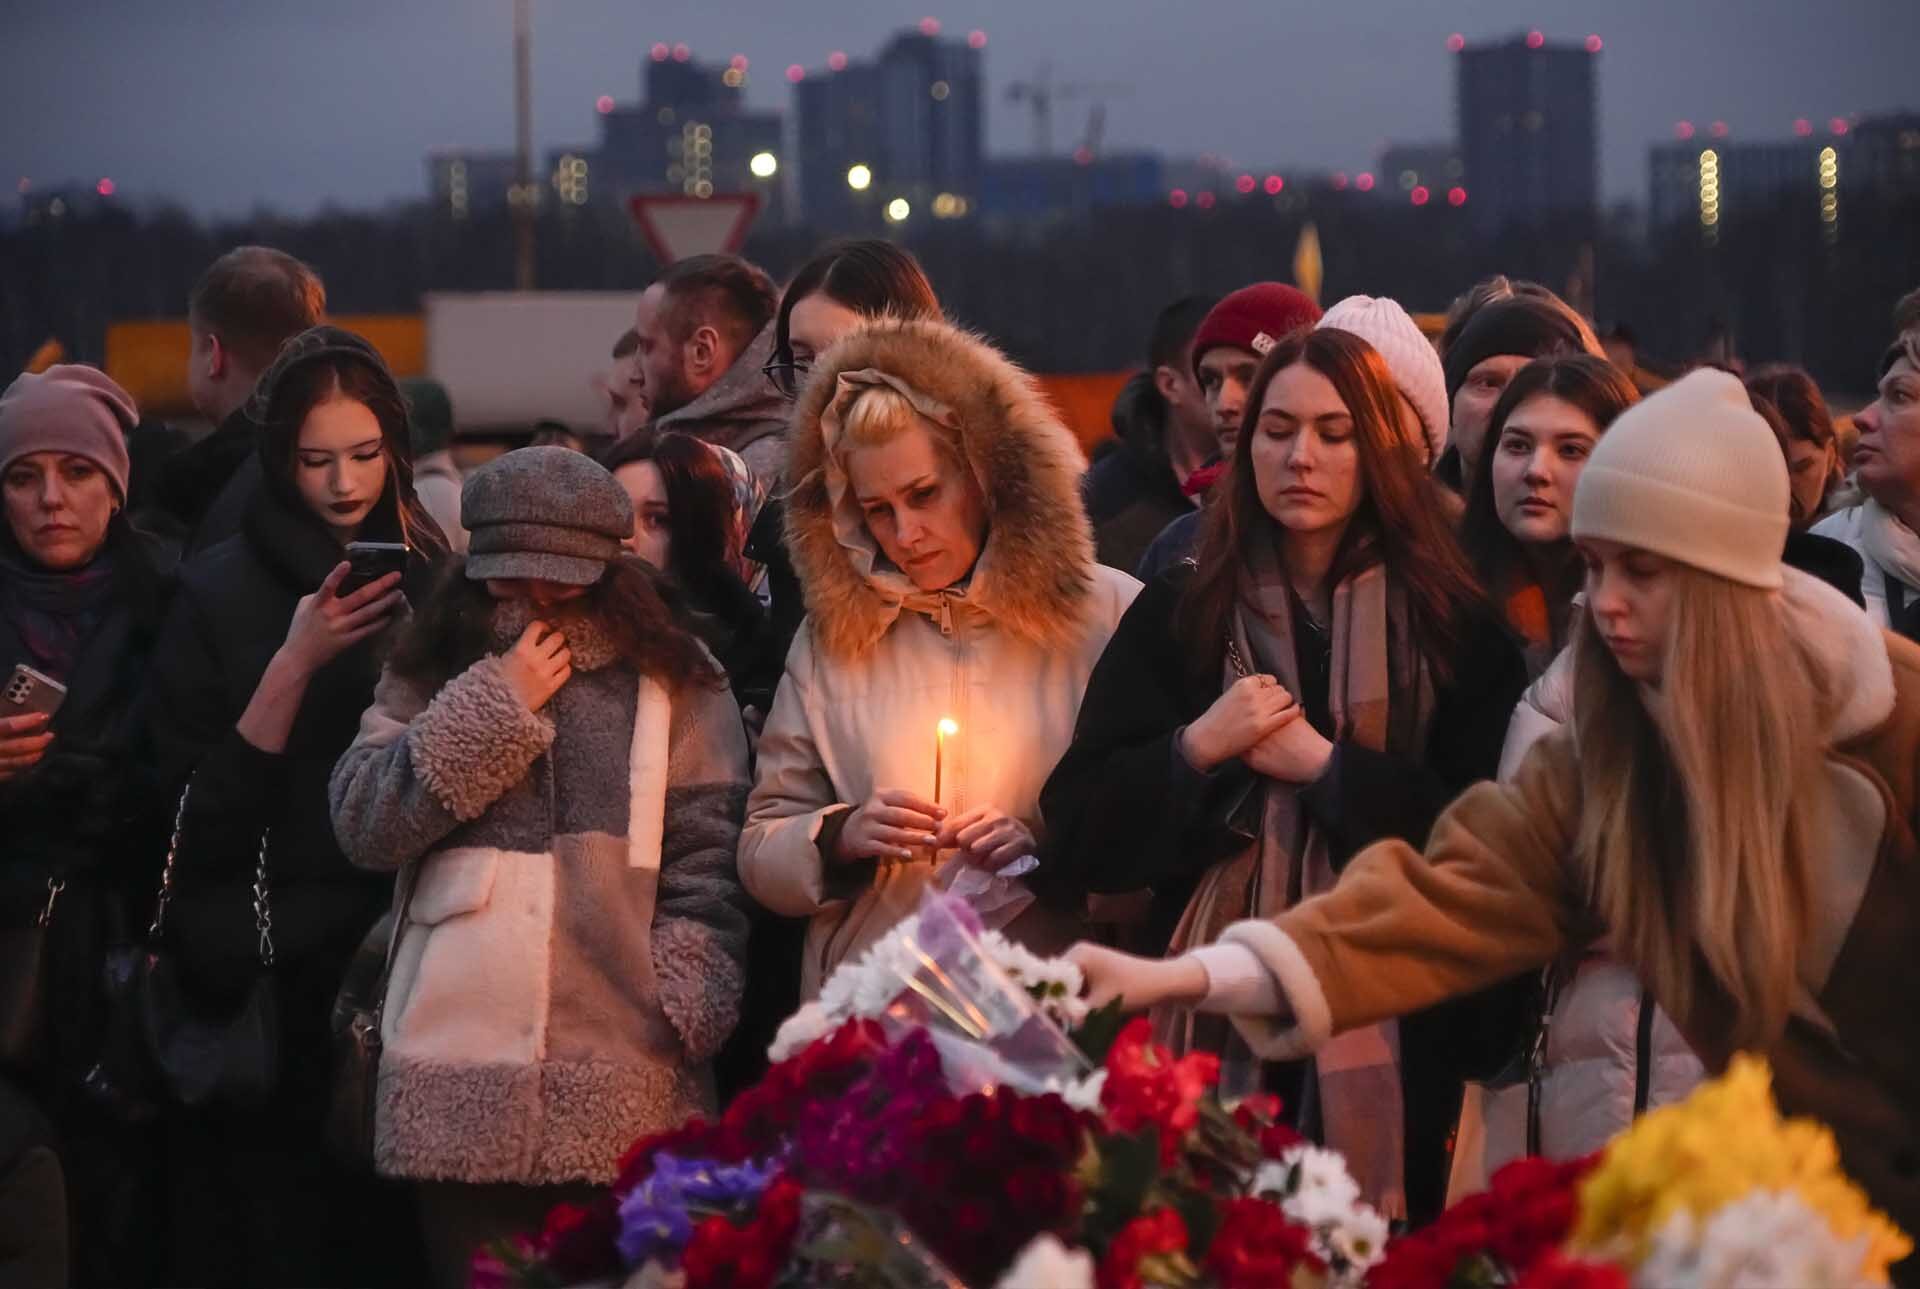 เหยื่อกราดยิงรัสเซียทะลุ 130 ศพ ยูเครนย้ำไม่เกี่ยว สหรัฐเคยเตือนแต่ถูกมองว่าป่วน